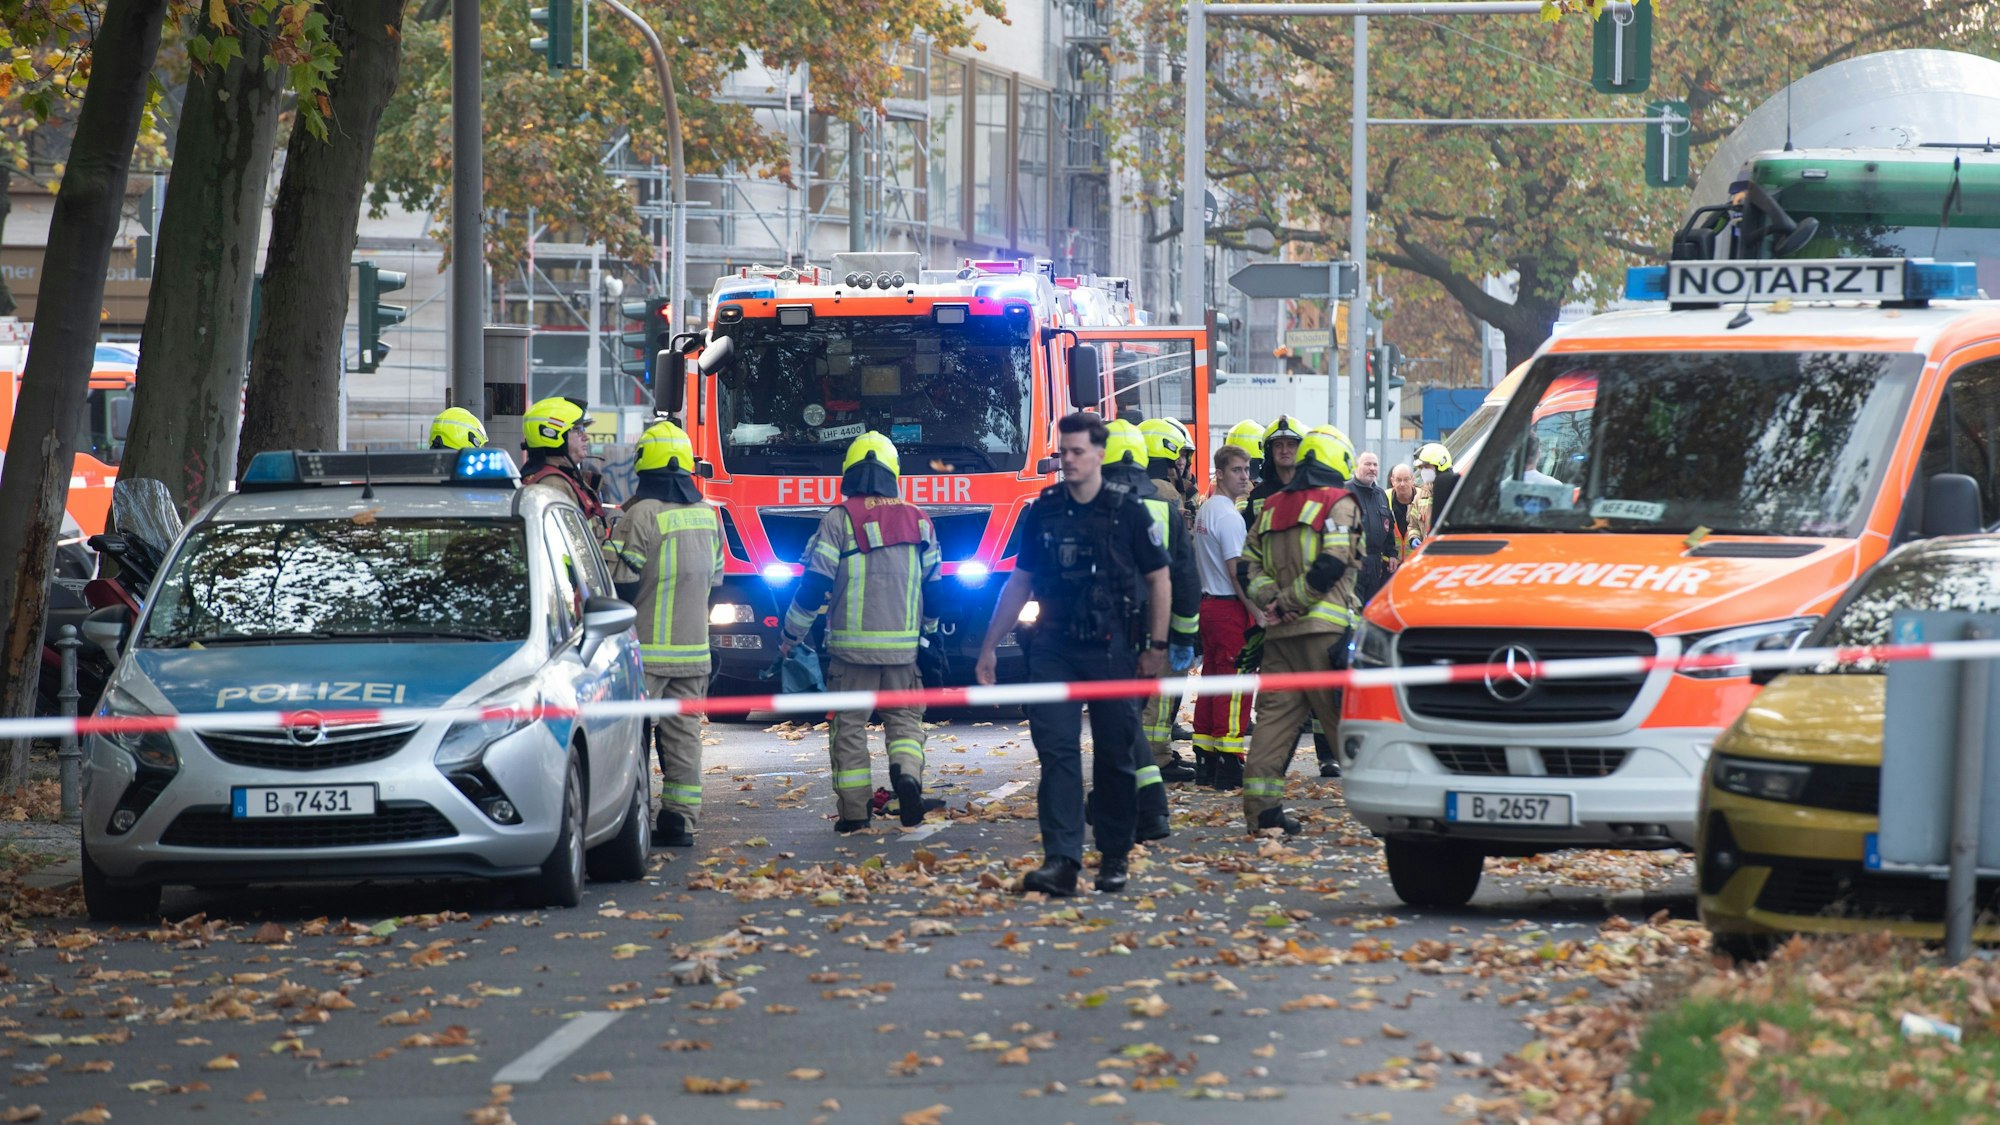 Einsatzfahrzeuge von Polizei und Feuerwehr stehen an der Bundesallee in Berlin-Wilmersdorf, wo eine Radfahrerin bei dem Verkehrsunfall mit einem Lastwagen lebensgefährlich verletzt wurde. Die Verletzte sei unter dem Betonmischer eingeklemmt worden, teilte ein Sprecher der Feuerwehr mit.